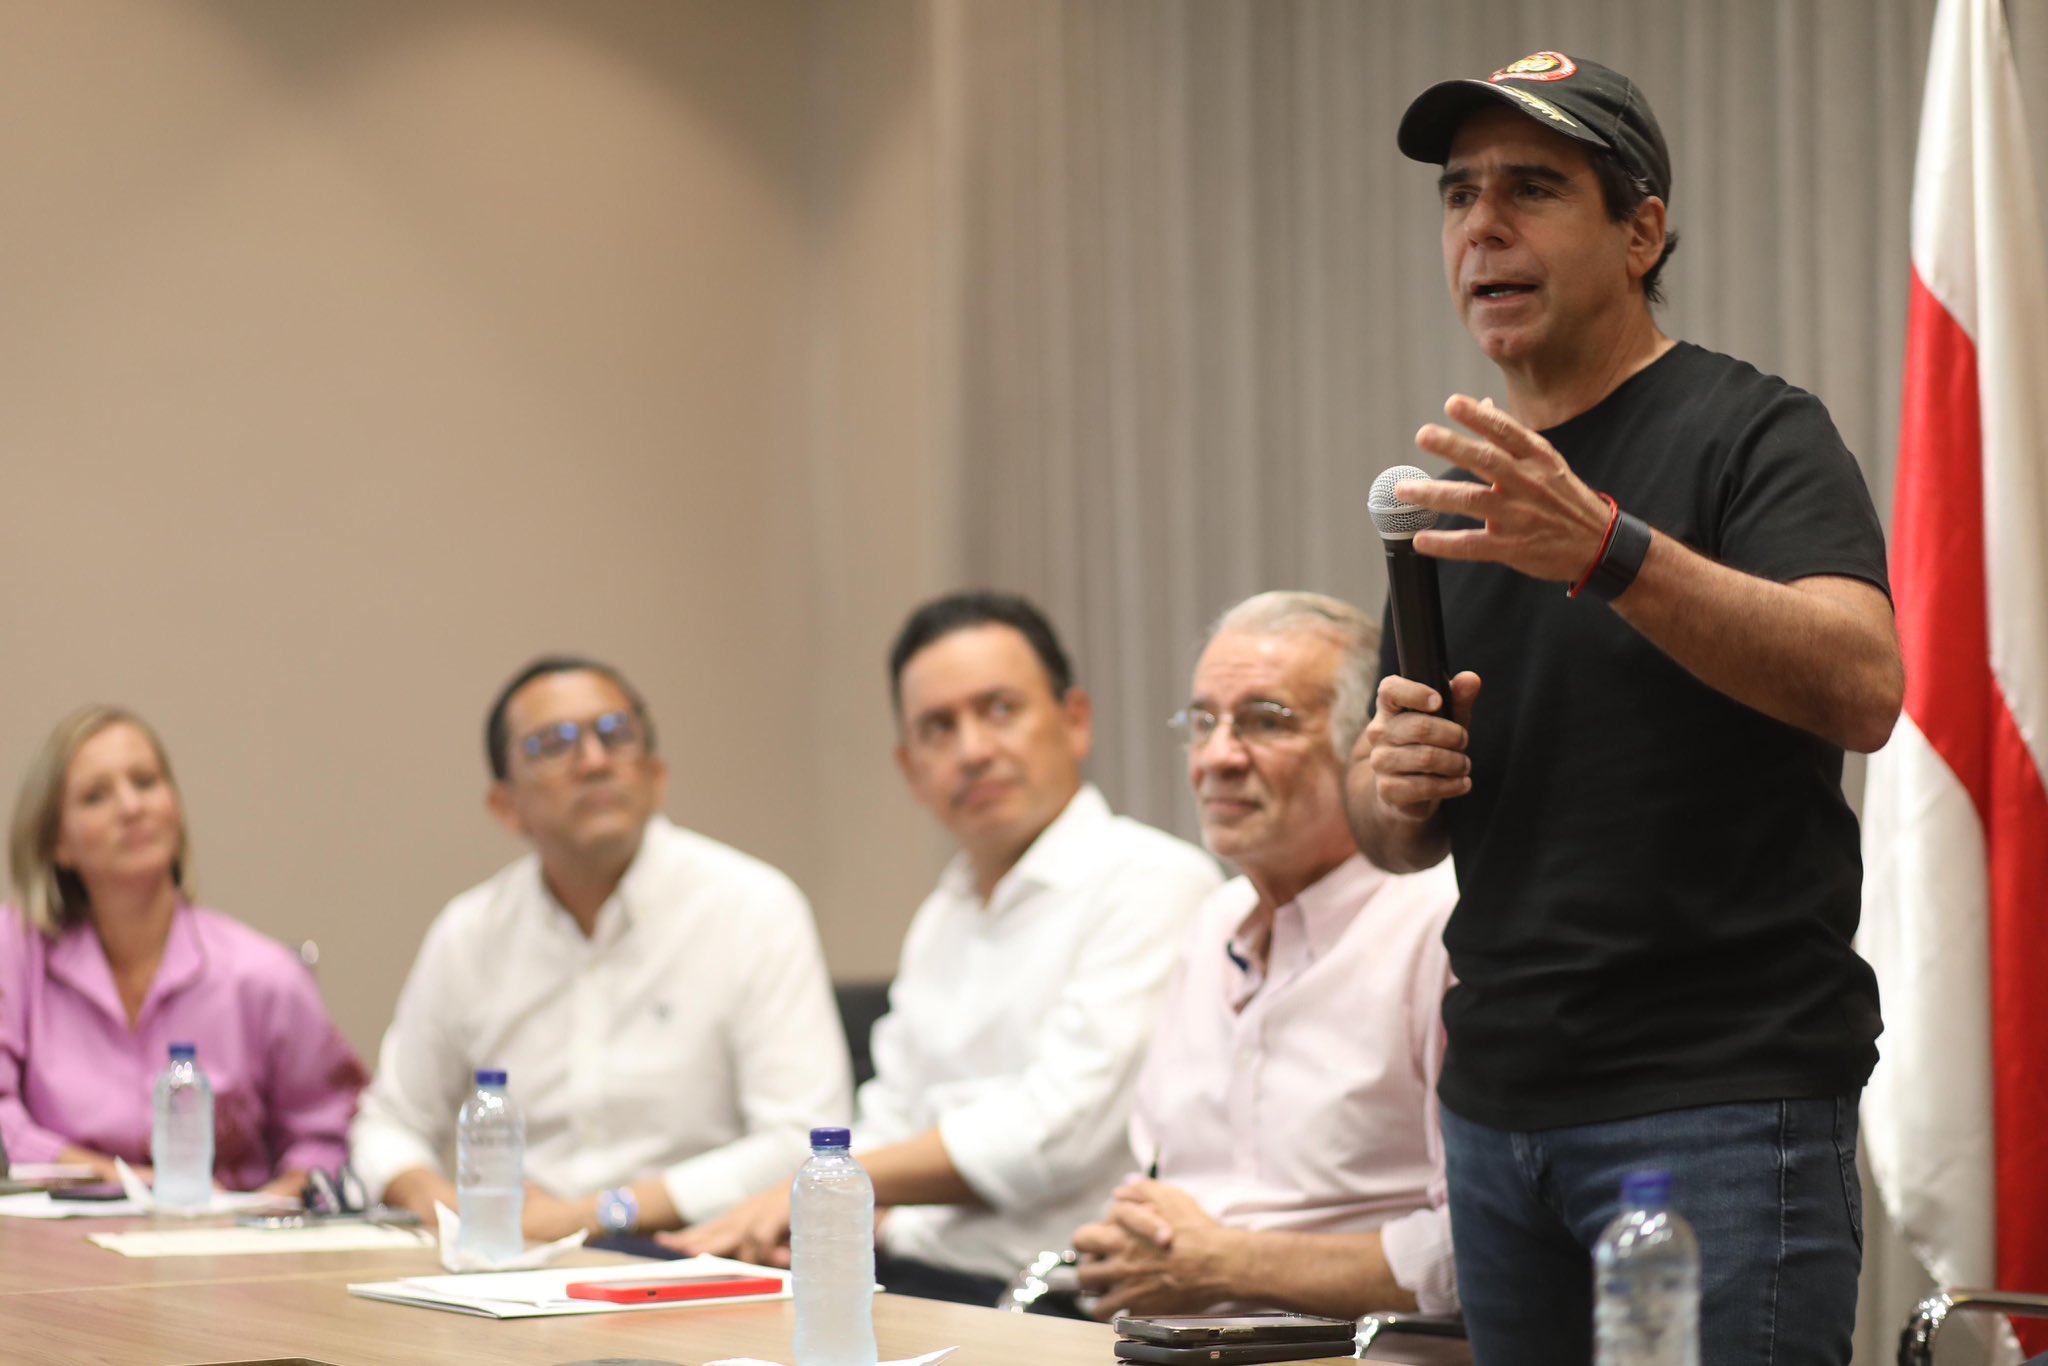 Barranquilla apunta a convertirse en el Super Puerto Digital líder de Latinoamérica, según el alcalde Alex Char